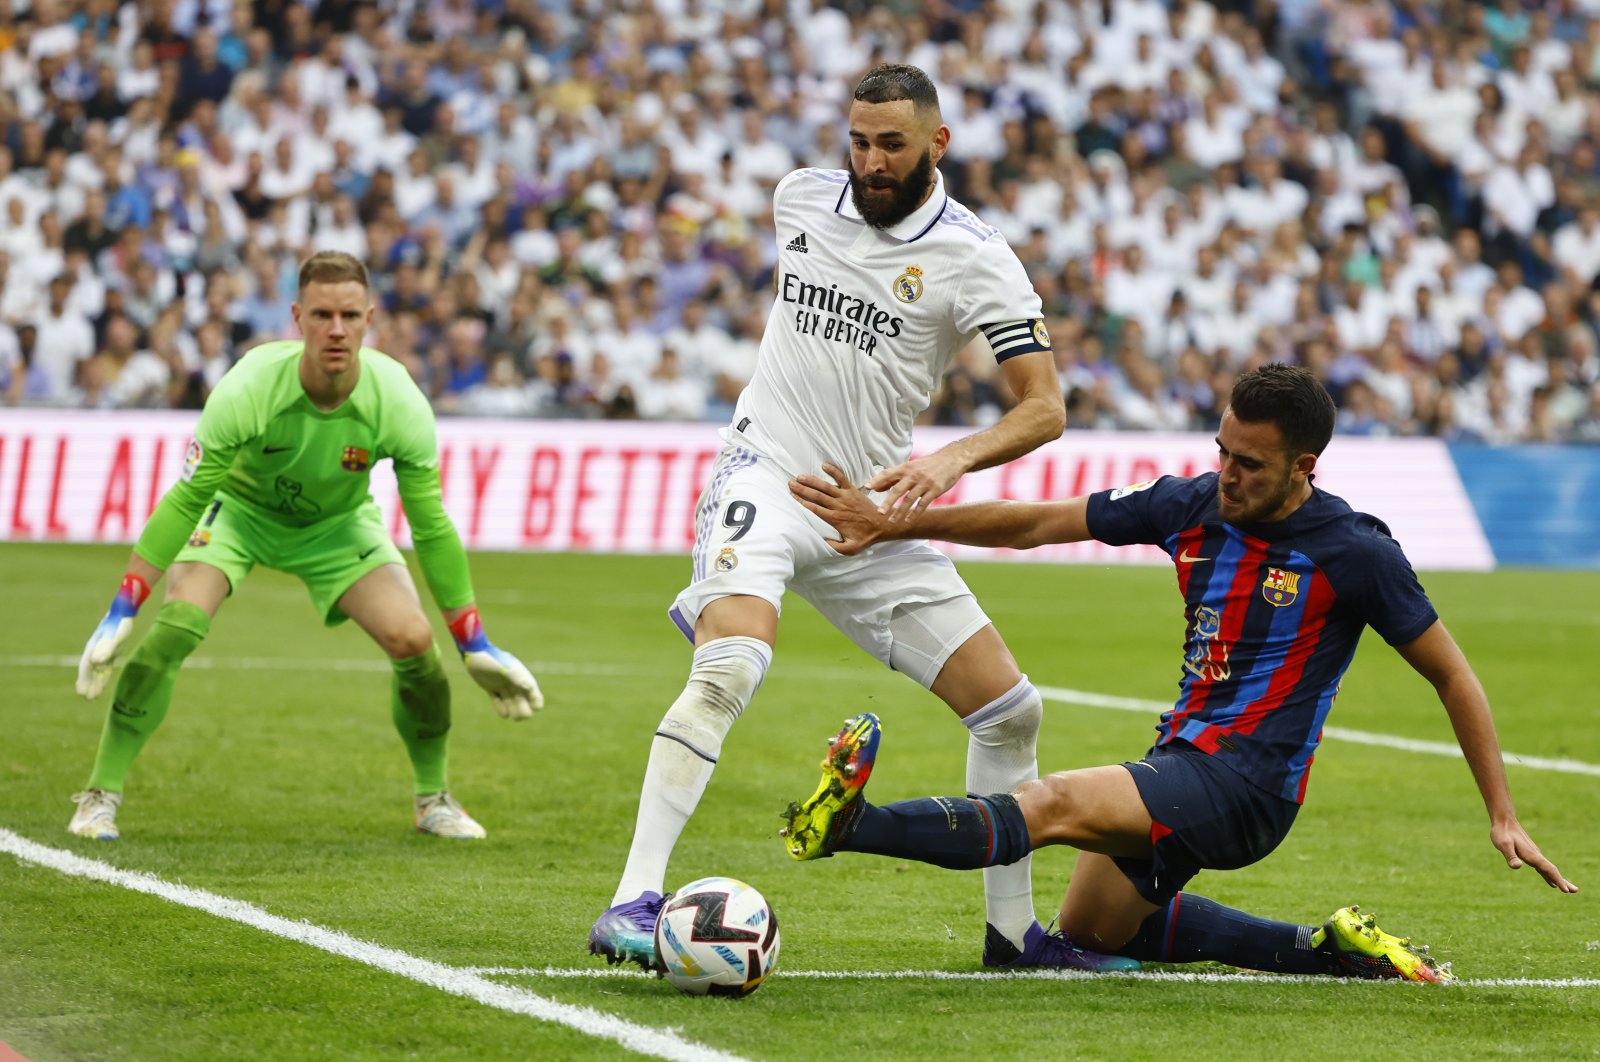 Madrid memperpanjang rekor kemenangan dengan kemenangan El Clasico untuk mengklaim posisi teratas